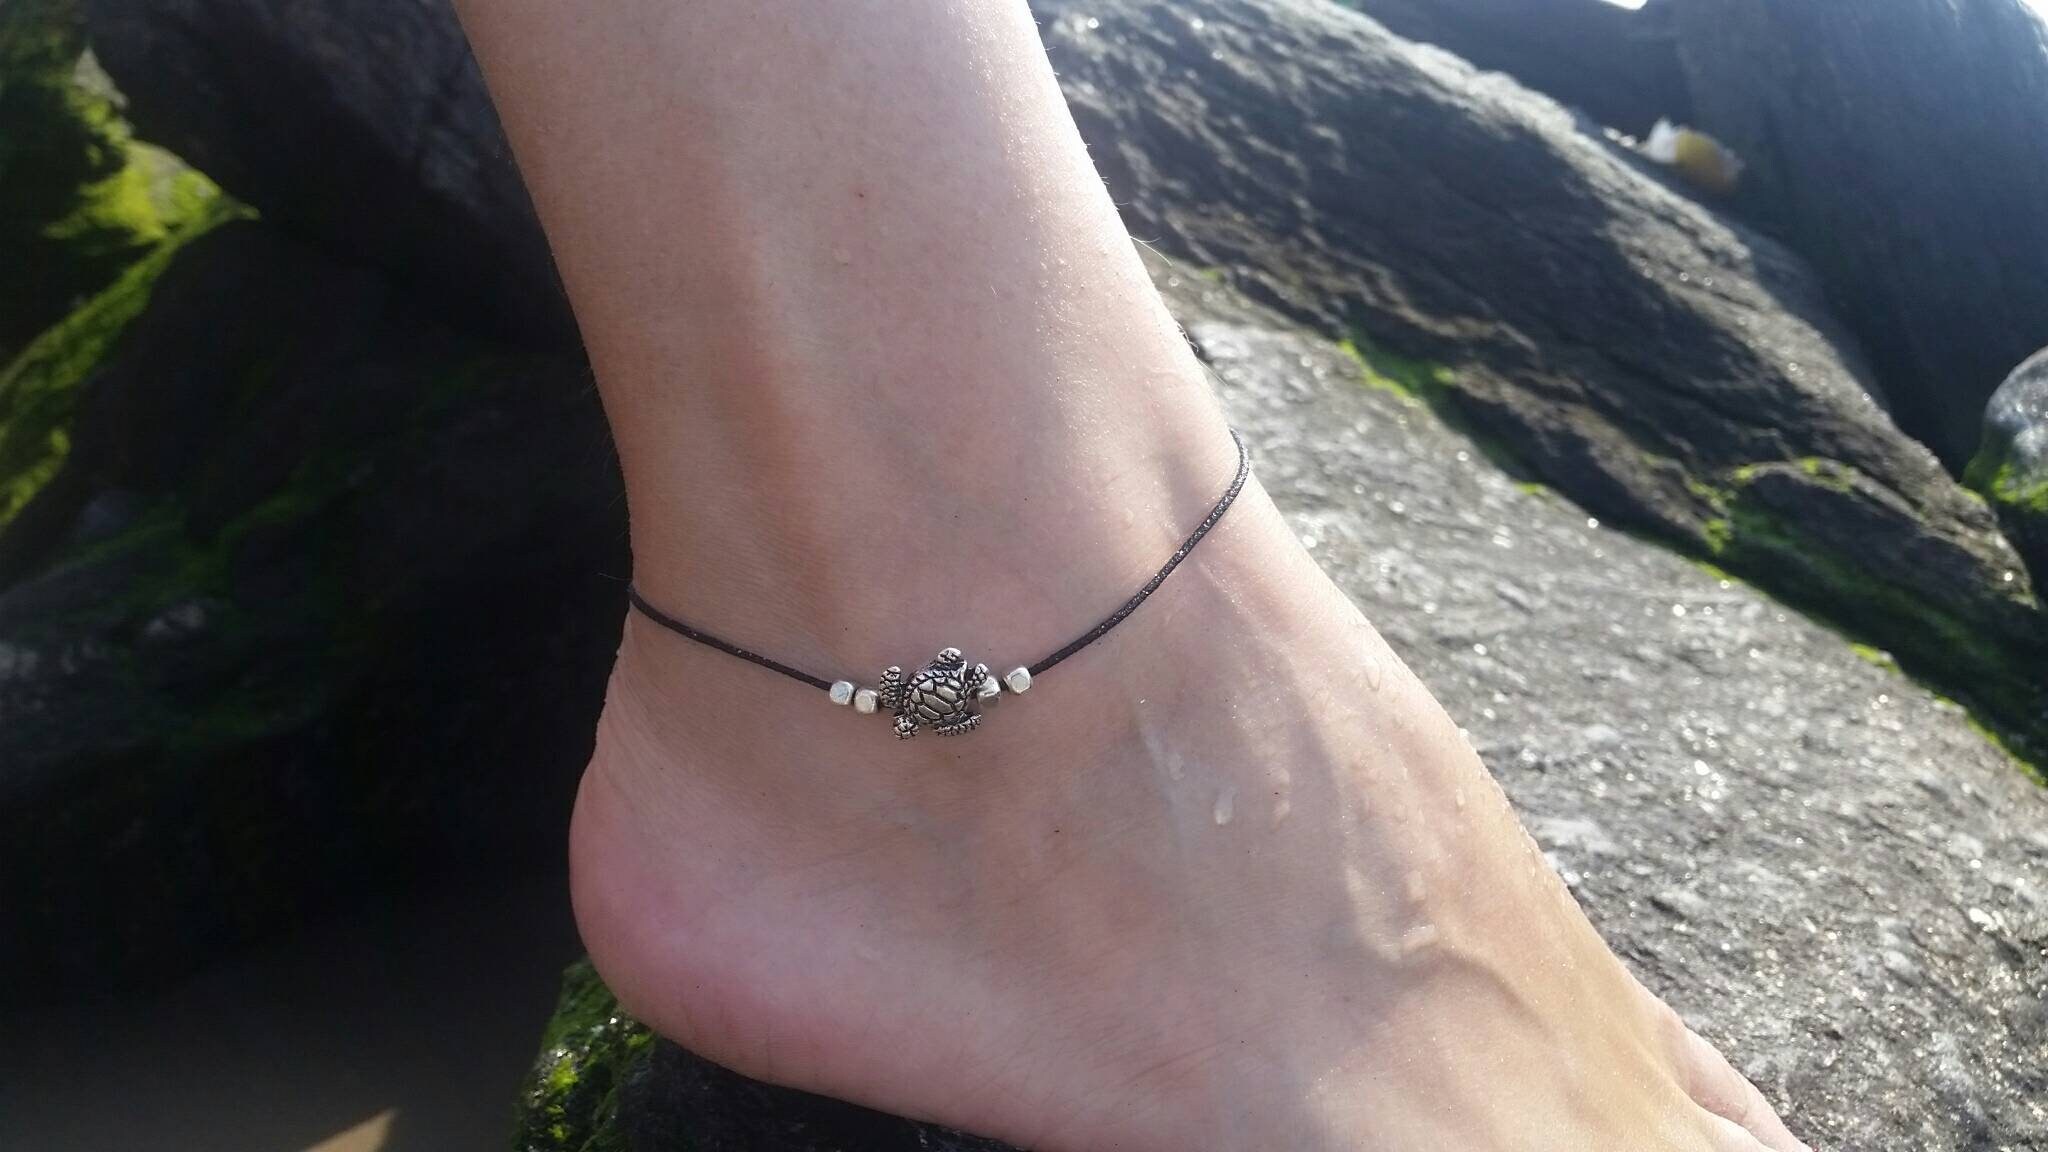 kanggest 25 cm braccialetto di caviglia Ciondolo Di Tartaruga Braccialetto piede catena decorativa della mano per il regalo delle donne adolescente 